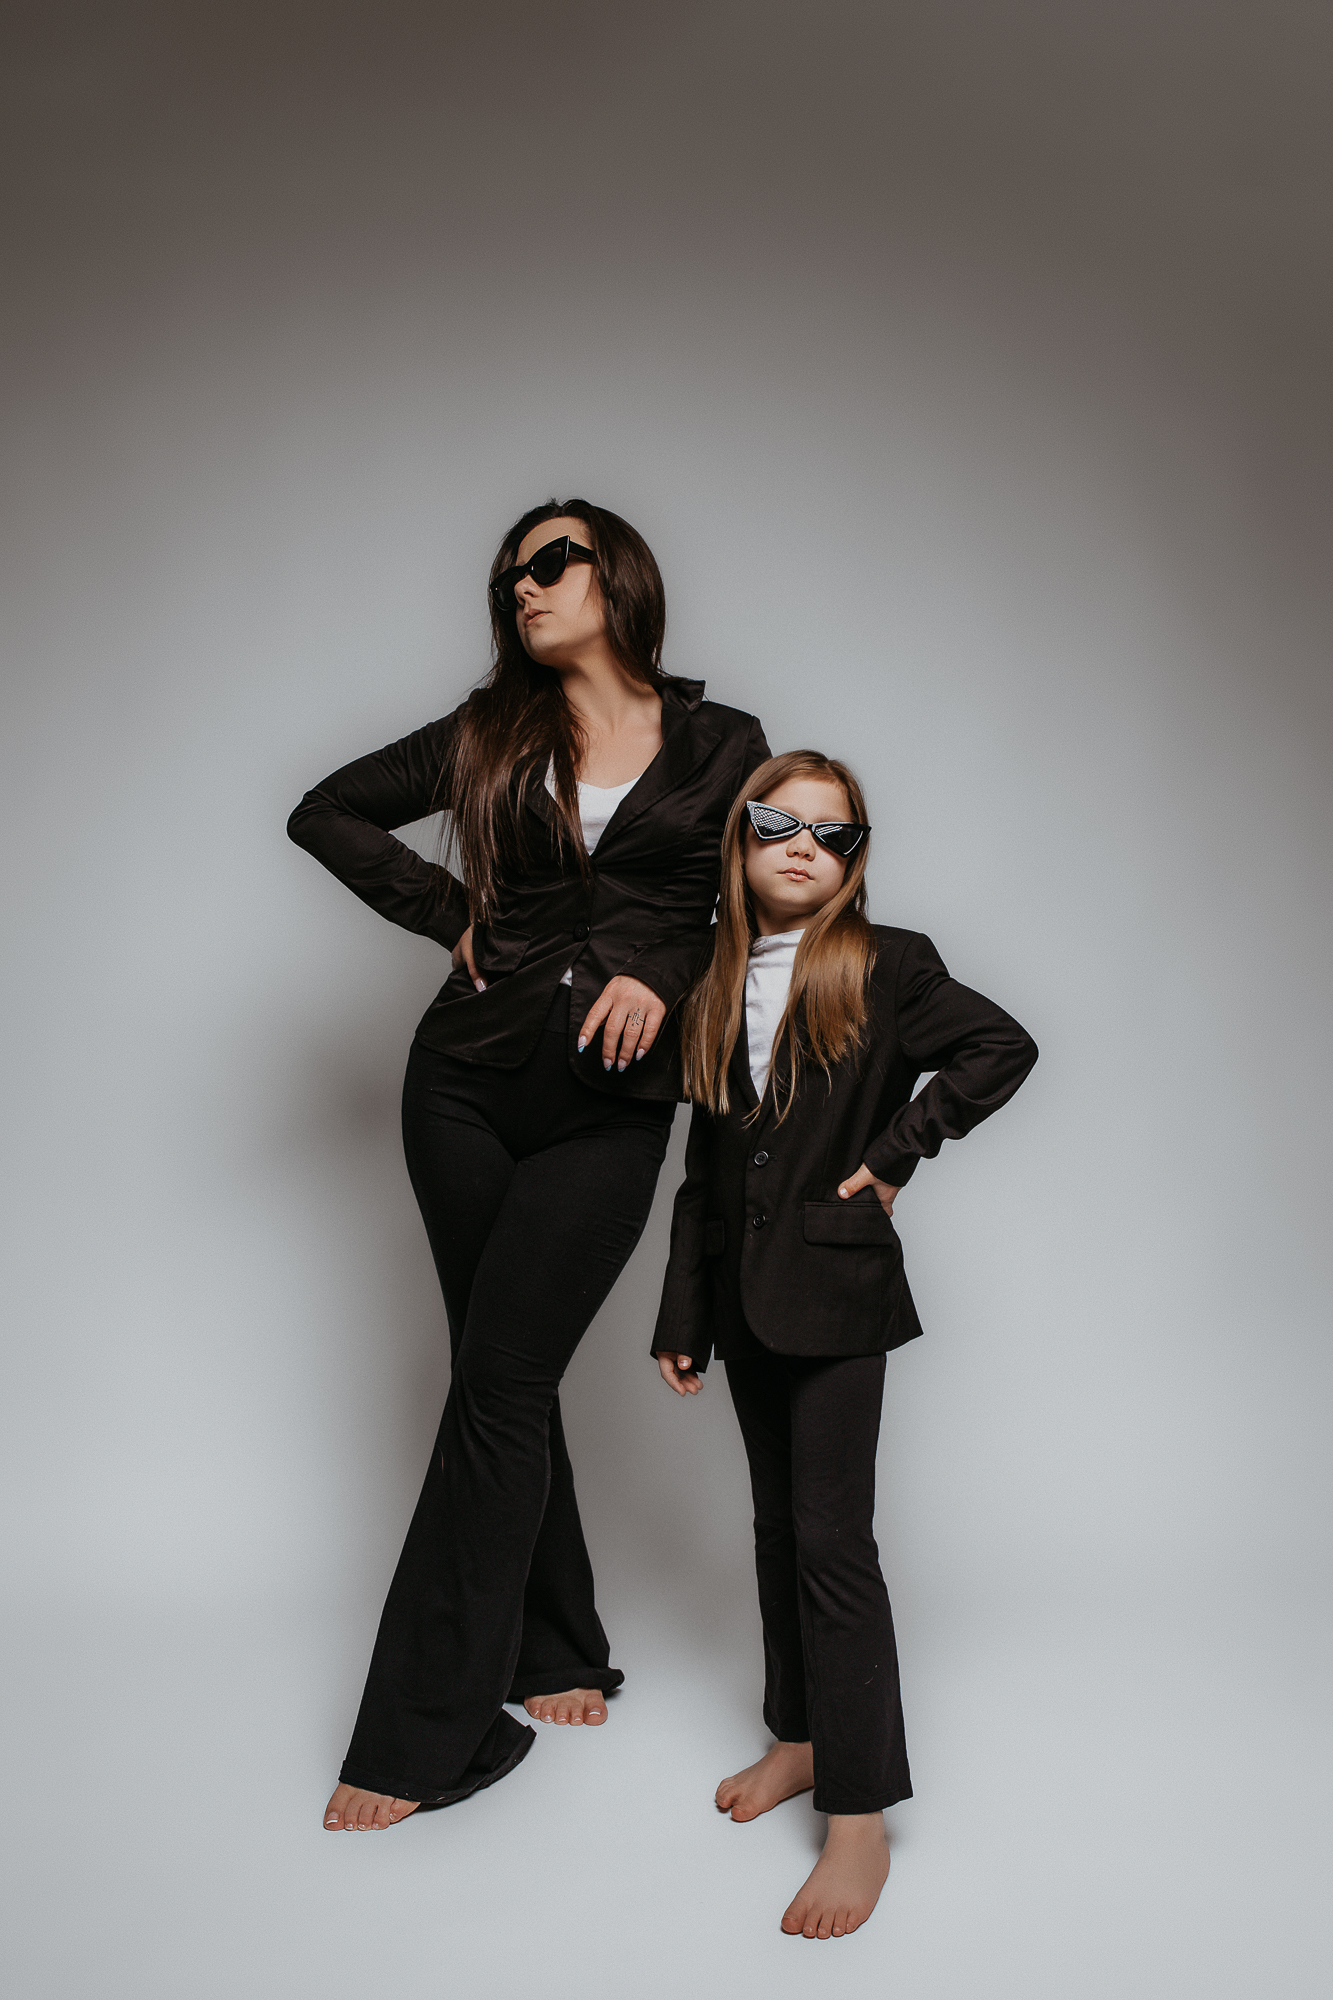 matka i córka stoją tak samo ubrane w czarne garnitury i czanr okulary